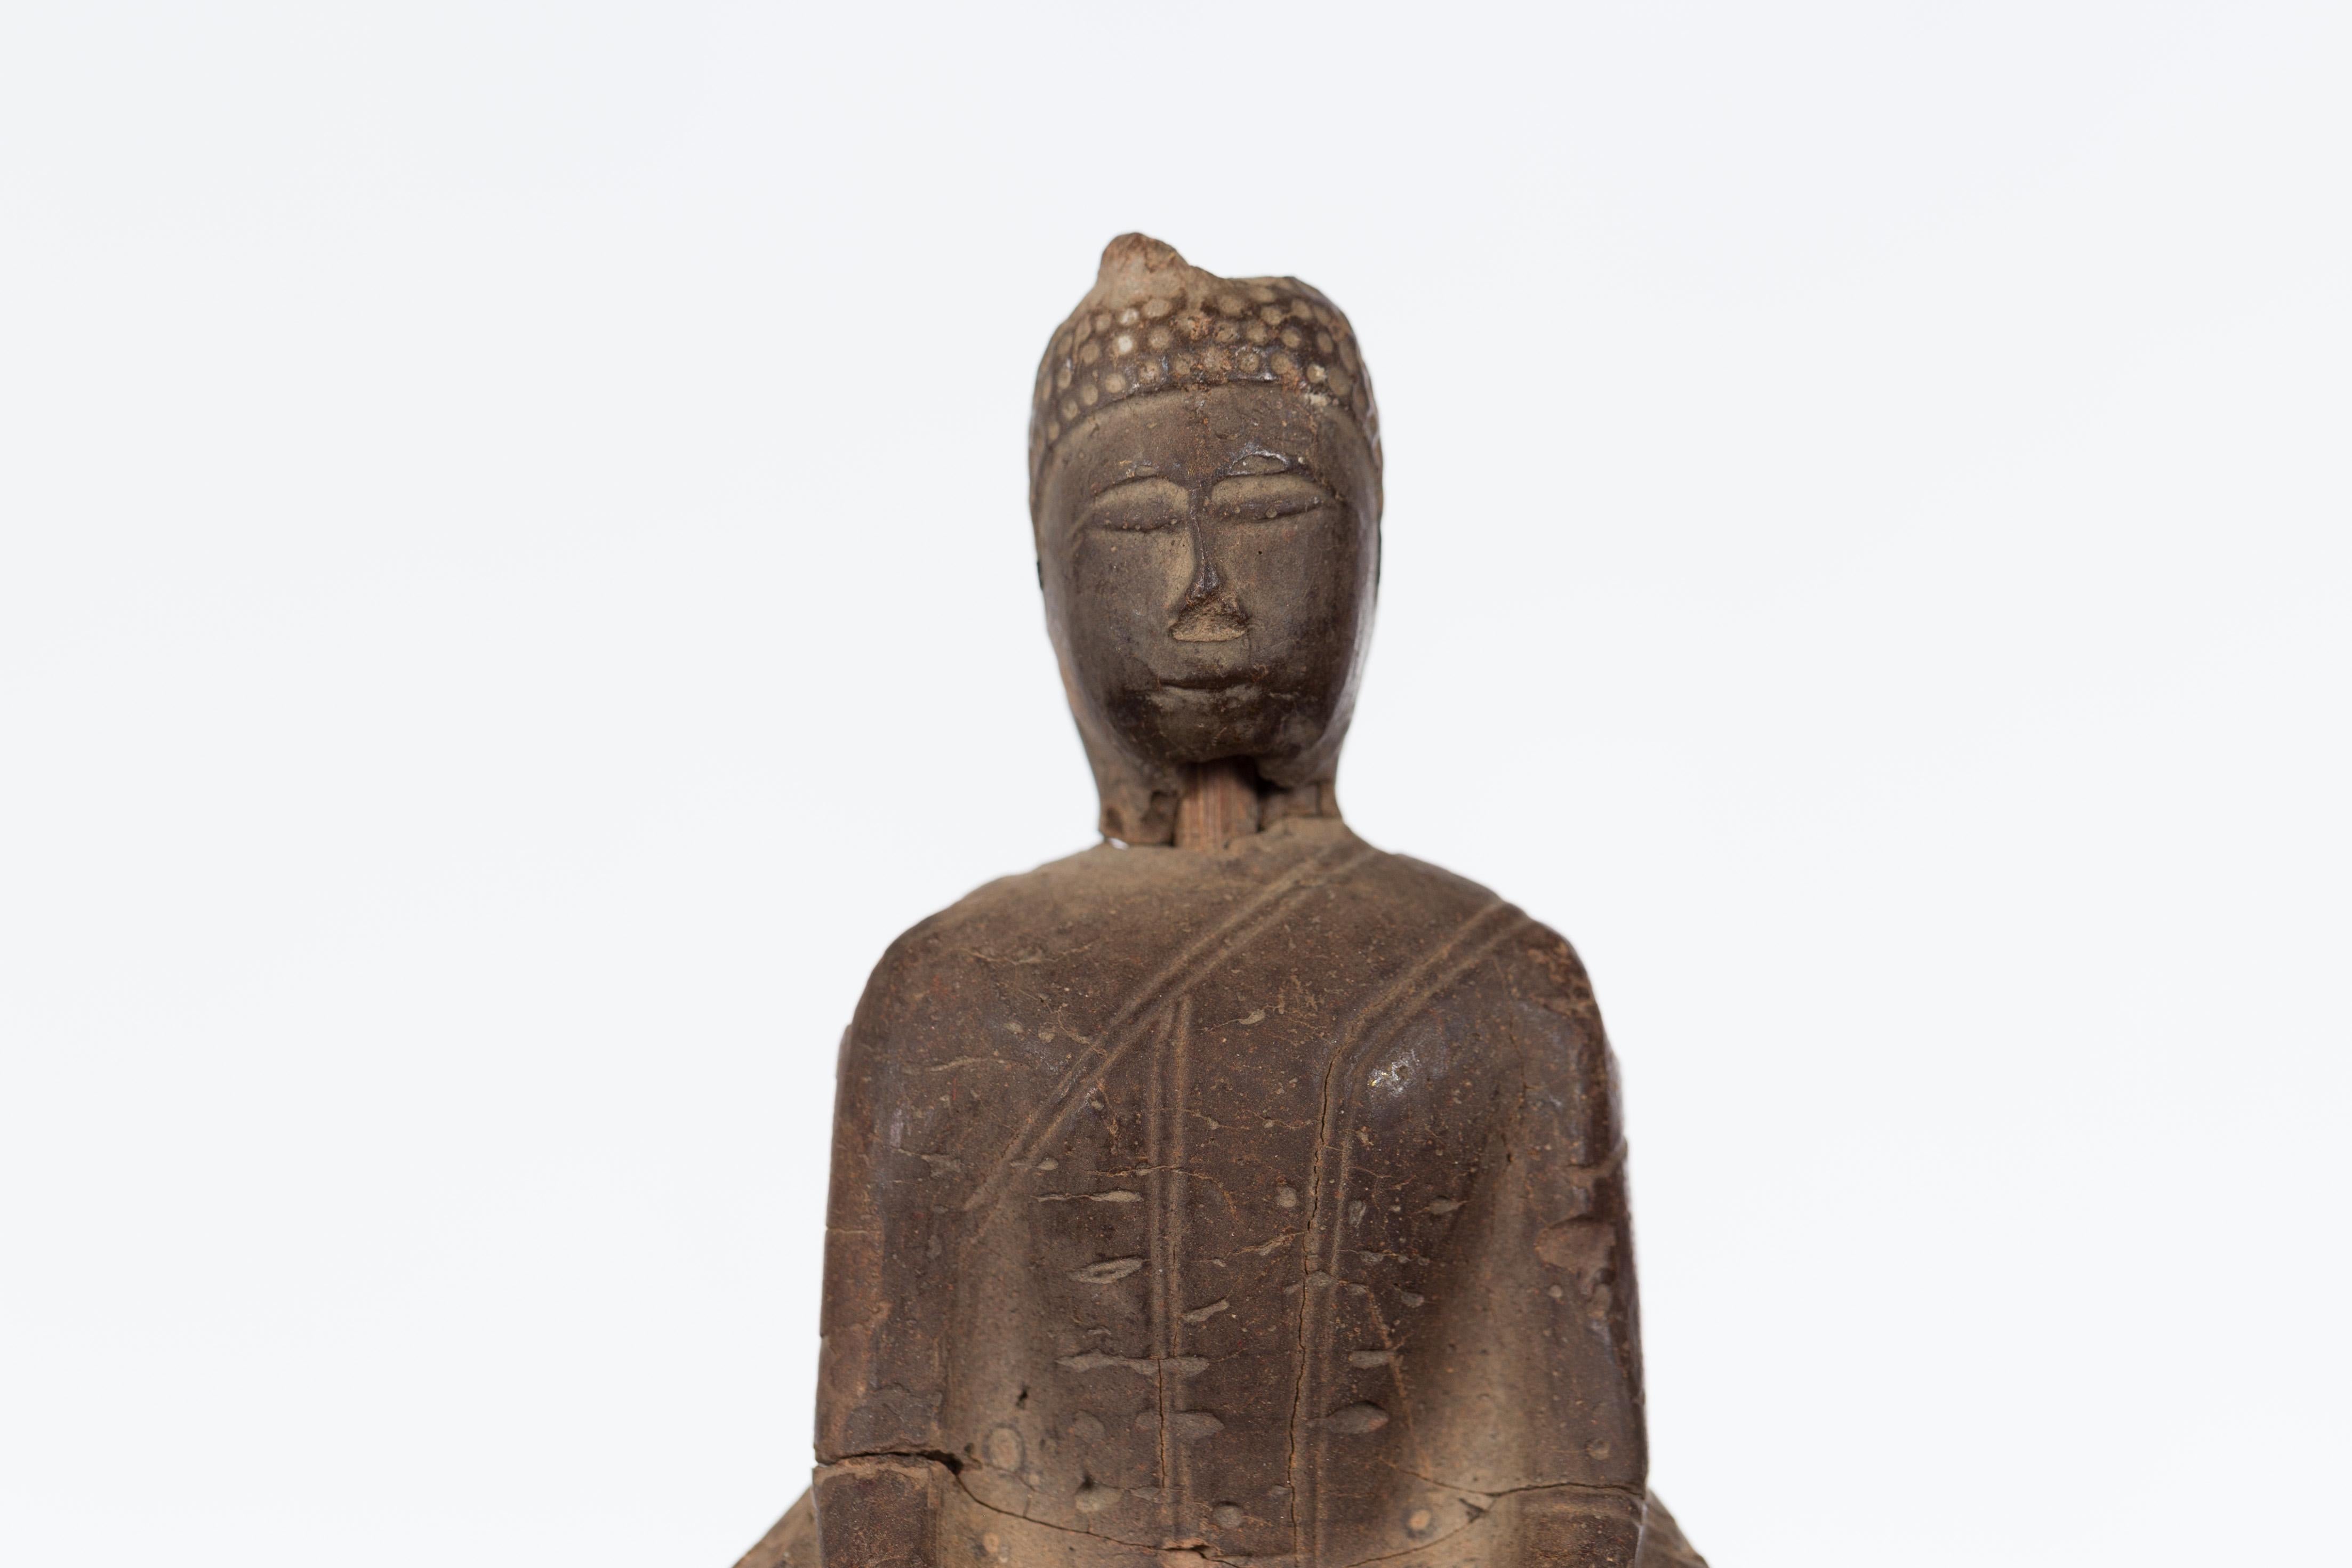 Carved Petite Wooden Thai Ayutthaya Period Buddha Sculpture with Bhumisparsha Mudra